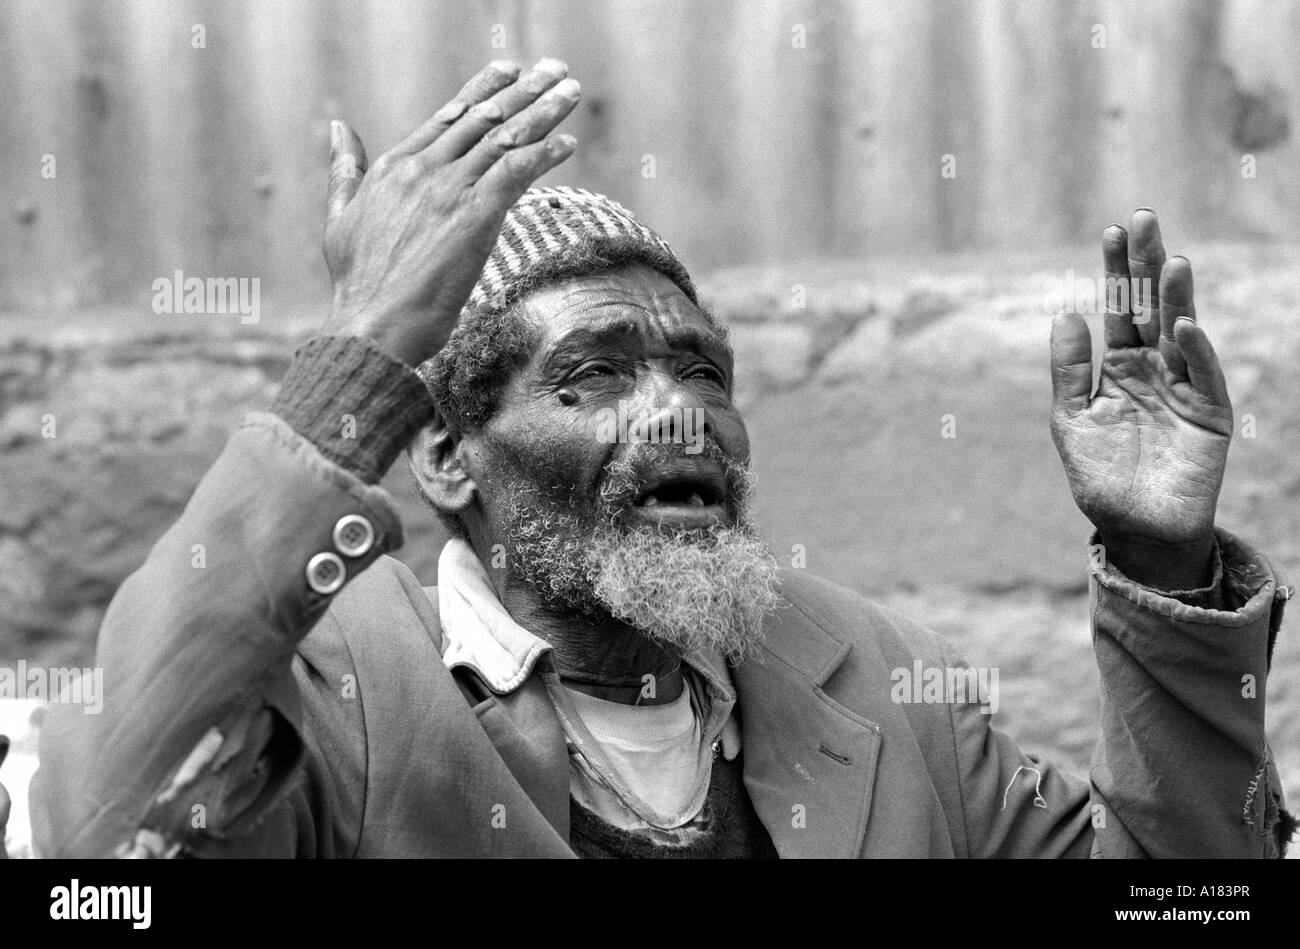 S/W eines mittellosen älteren Mannes, der sich über seine Lebensbedingungen in den Slums von Addis Abeba beschwert. Äthiopien, Afrika Stockfoto